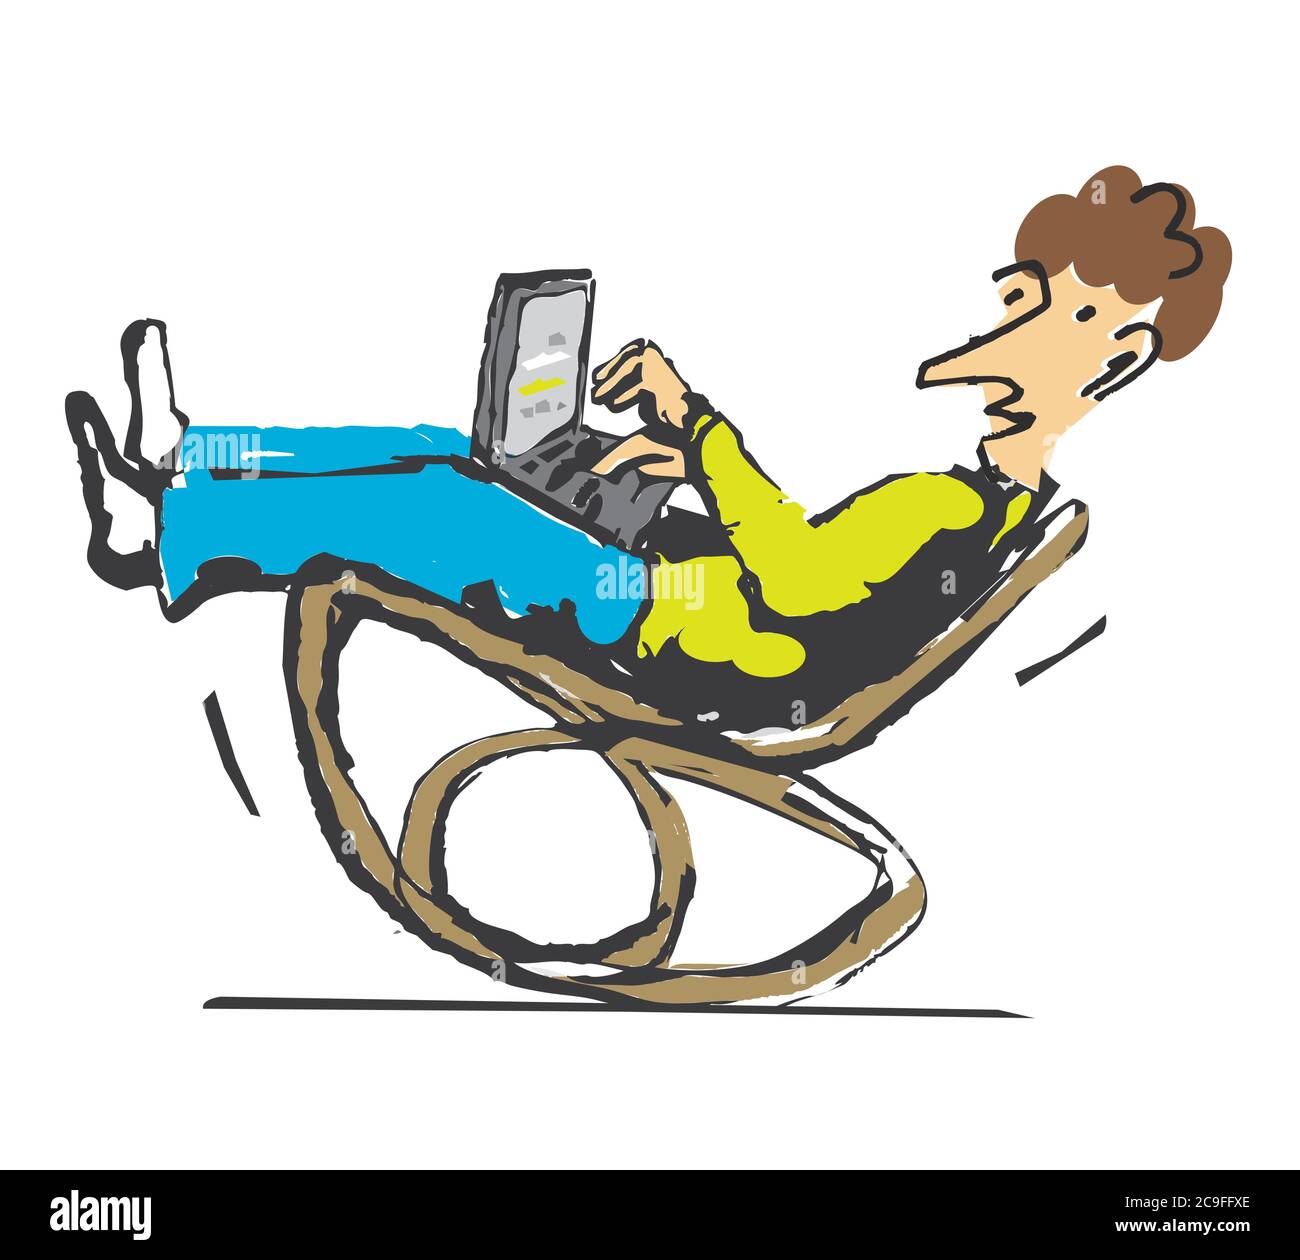 Mann mit Laptop sitzt in Schaukelstuhl. Expressive Illustration des lächelnden Mannes, der mit Laptop zu Hause arbeitet.Konzept für Home Office. Vektor verfügbar Stock Vektor